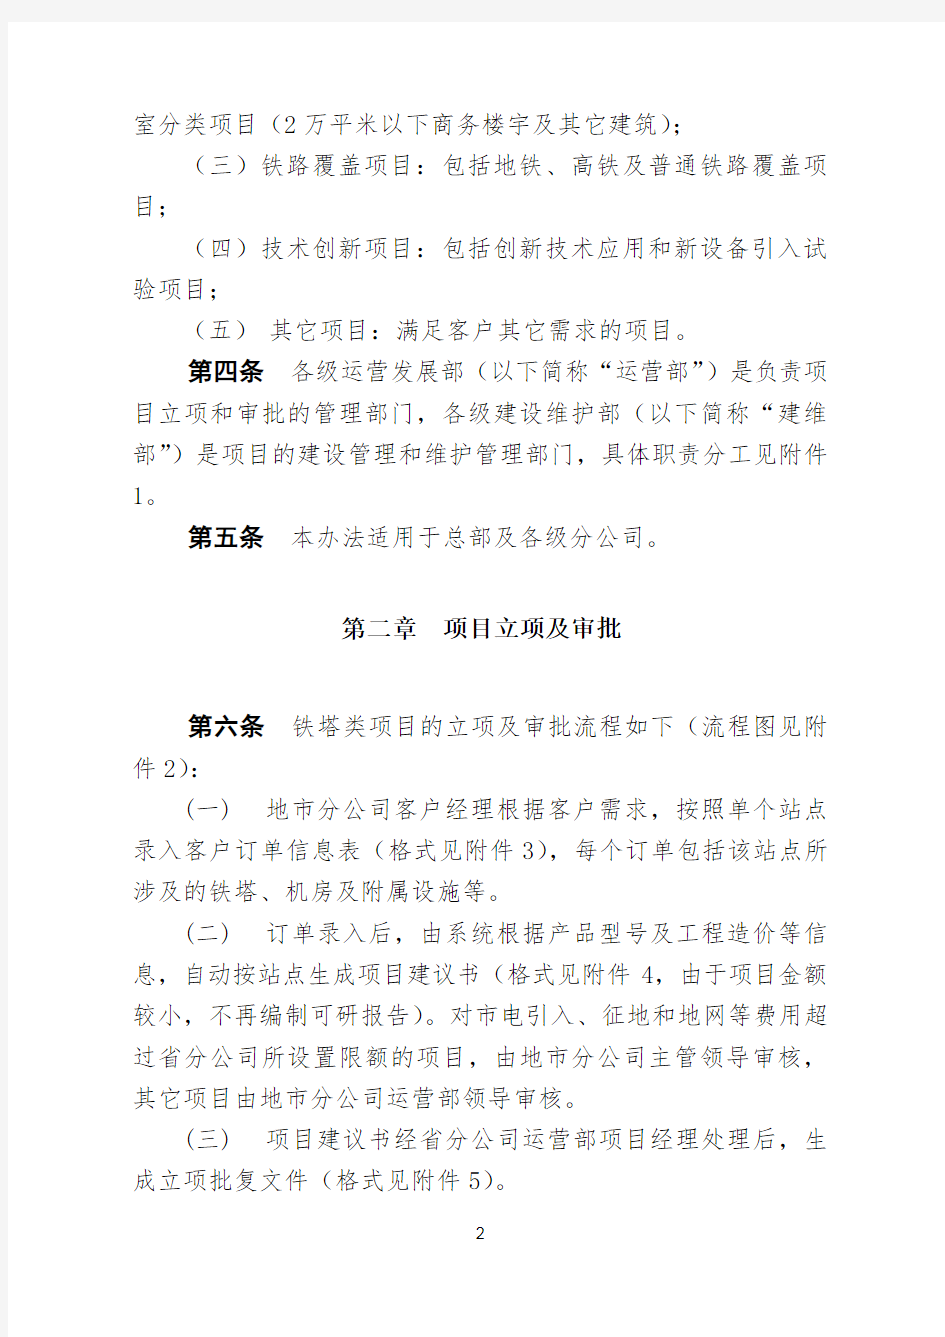 中国铁塔股份有限公司工程项目管理办法试行[za]